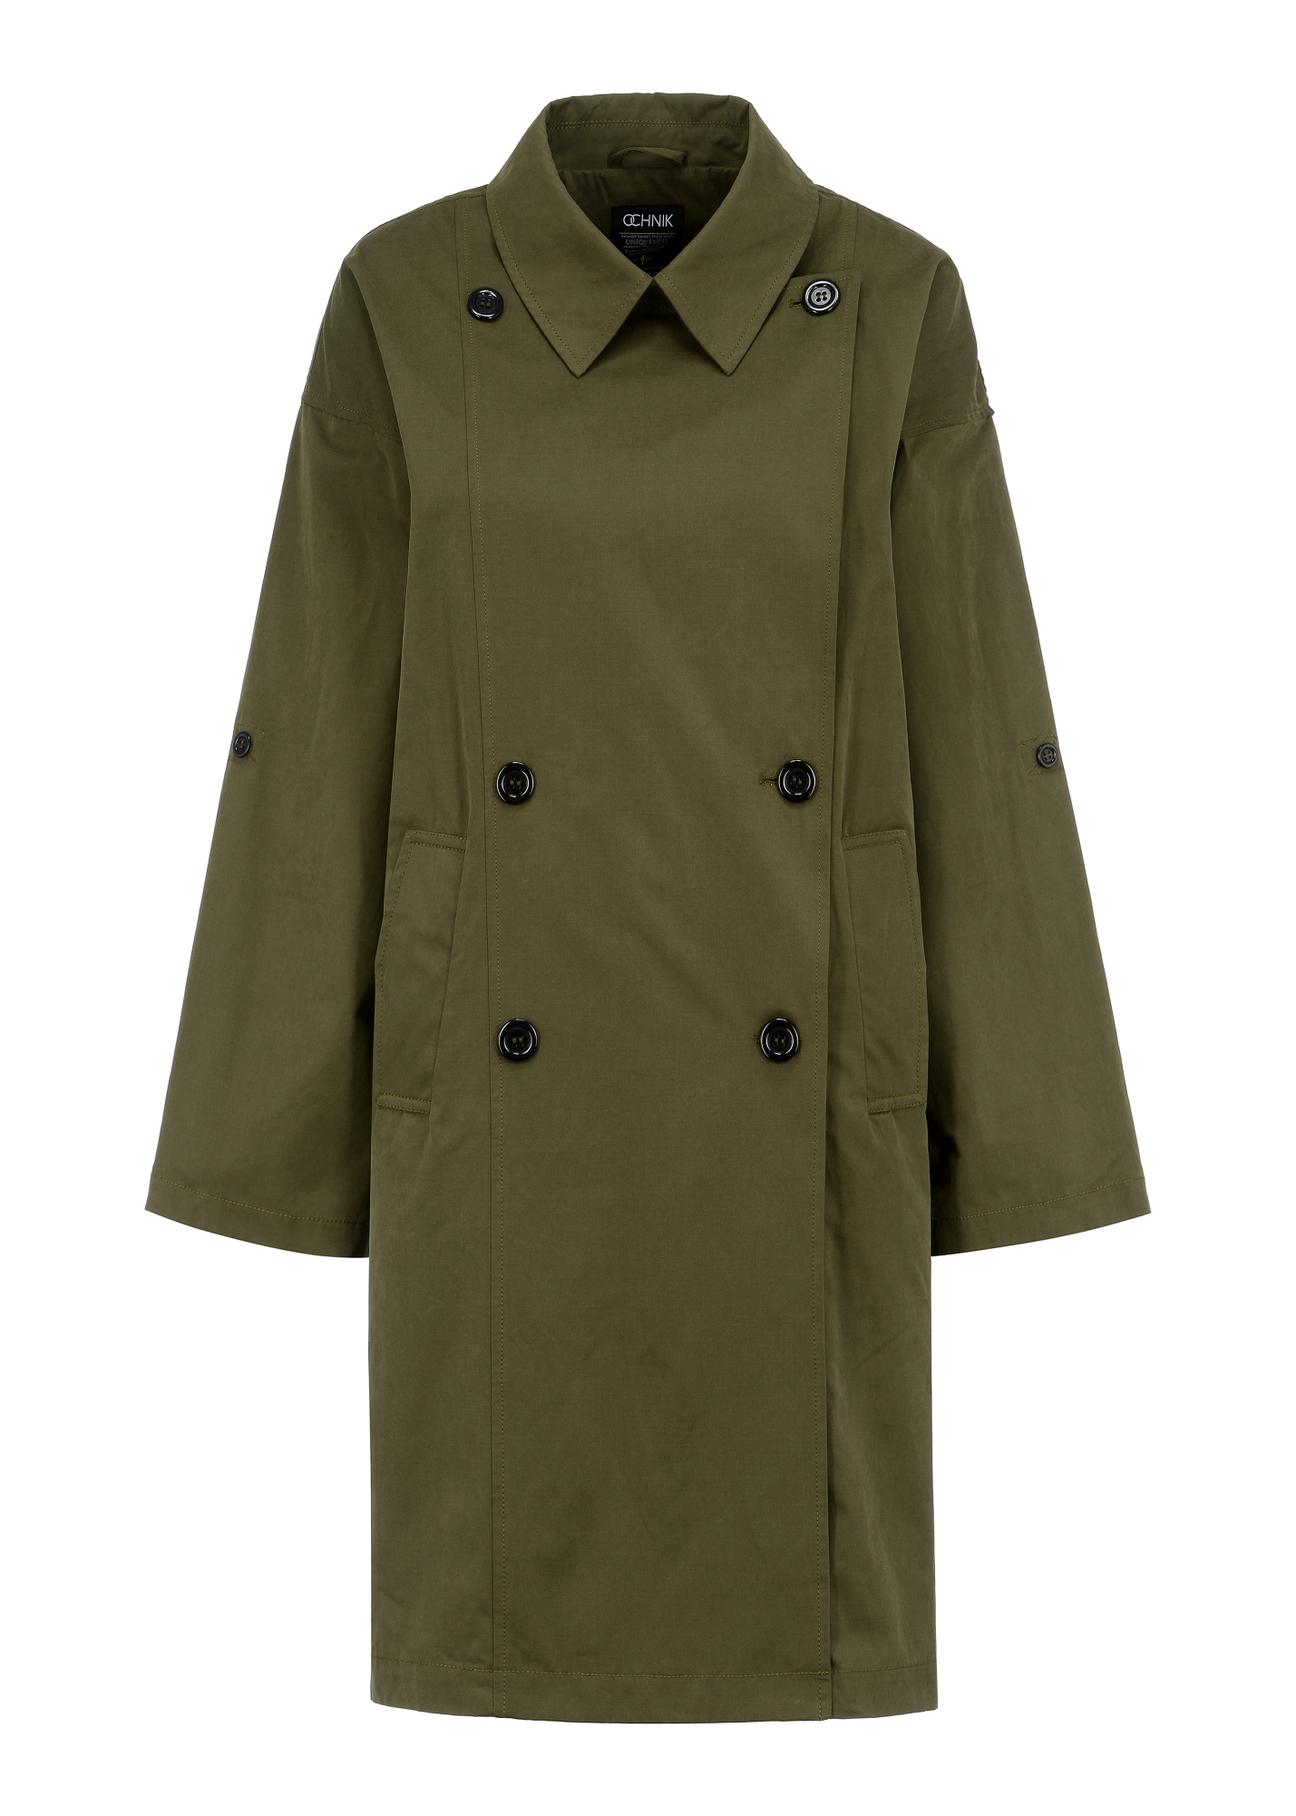 Dwurzędowy zielony płaszcz damski KURDT-0445-51(W23)